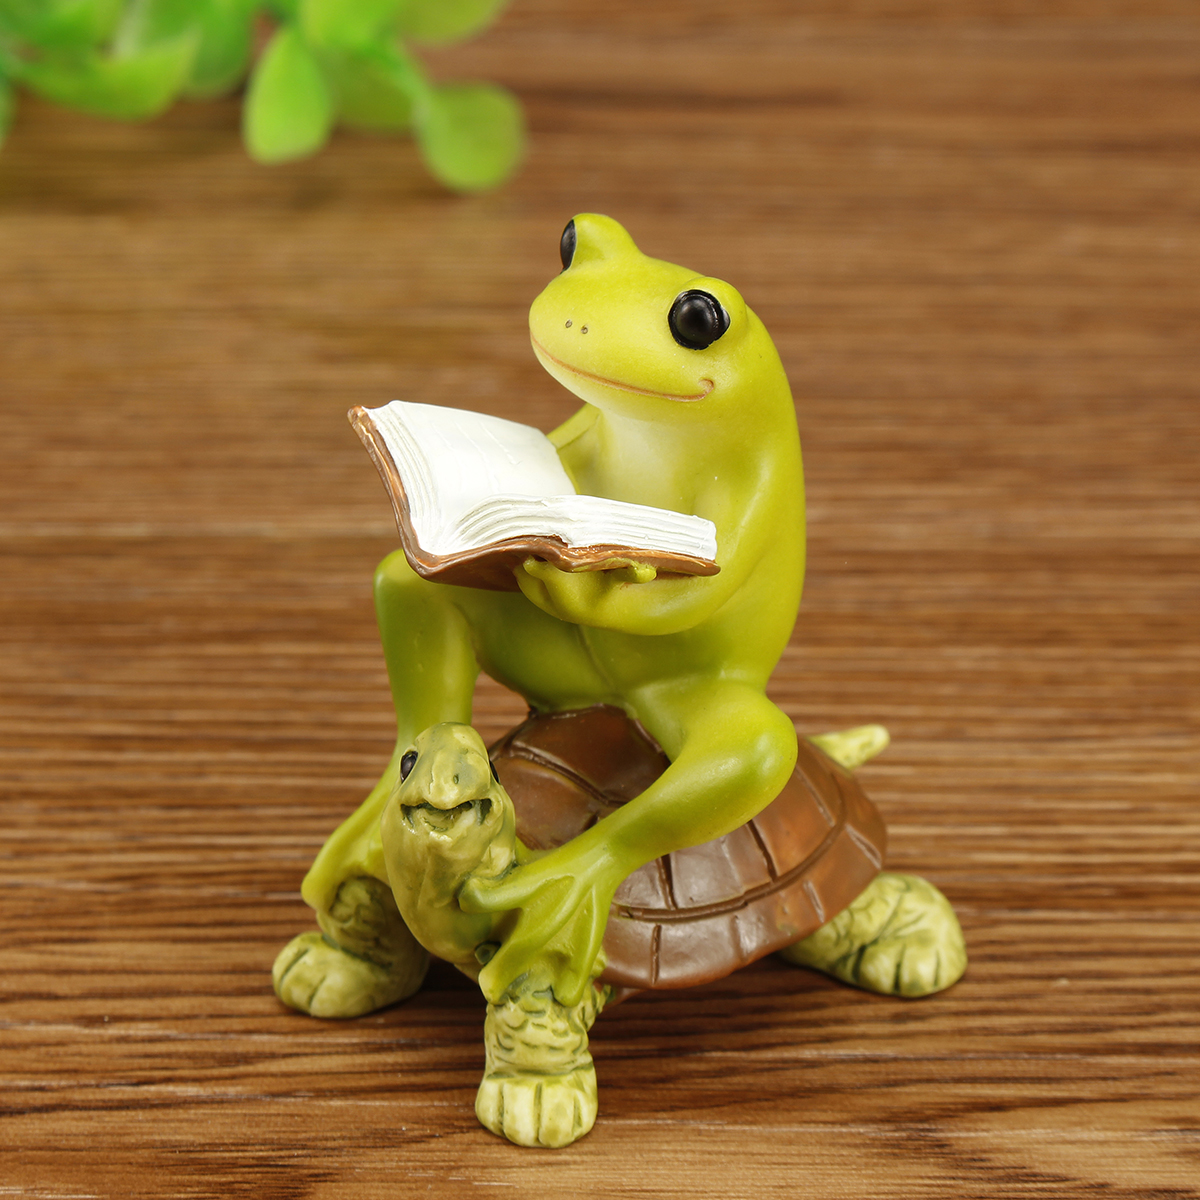 Cute-Frog-Statue-Figurine-Home-Office-Desk-Ornament-Garden-Bonsai-Decor-Gift-1704537-6